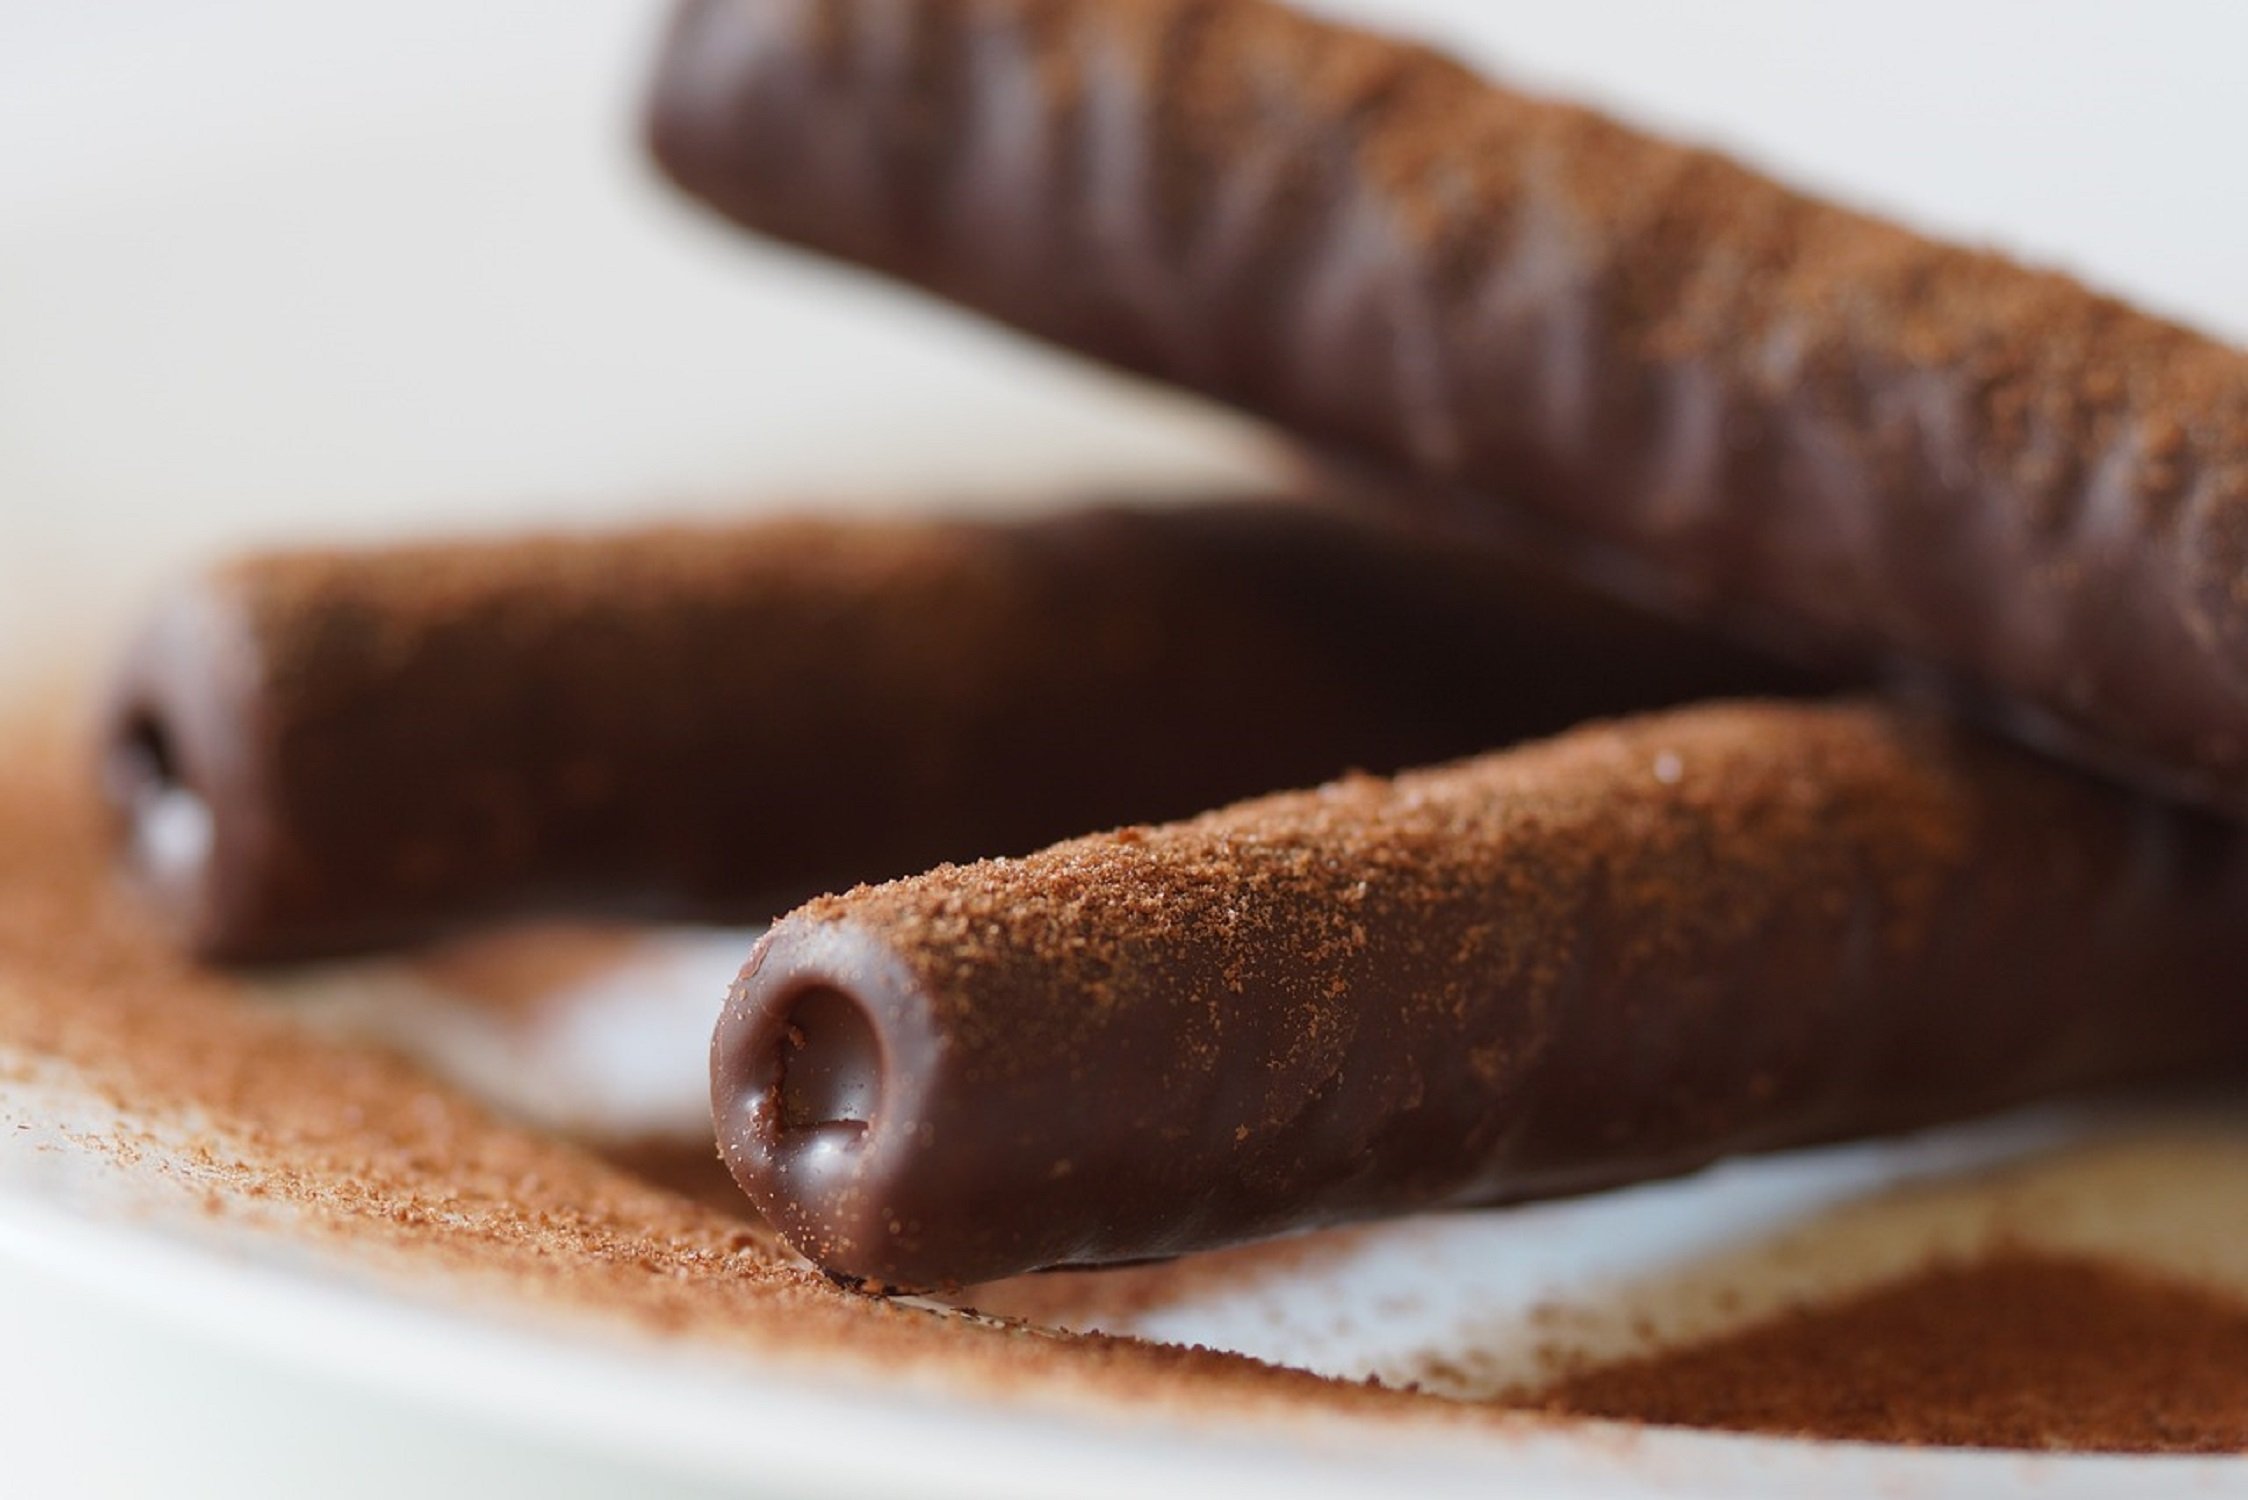 Les noves galetes de xocolata de Mercadona que triomfen: "són un vici"